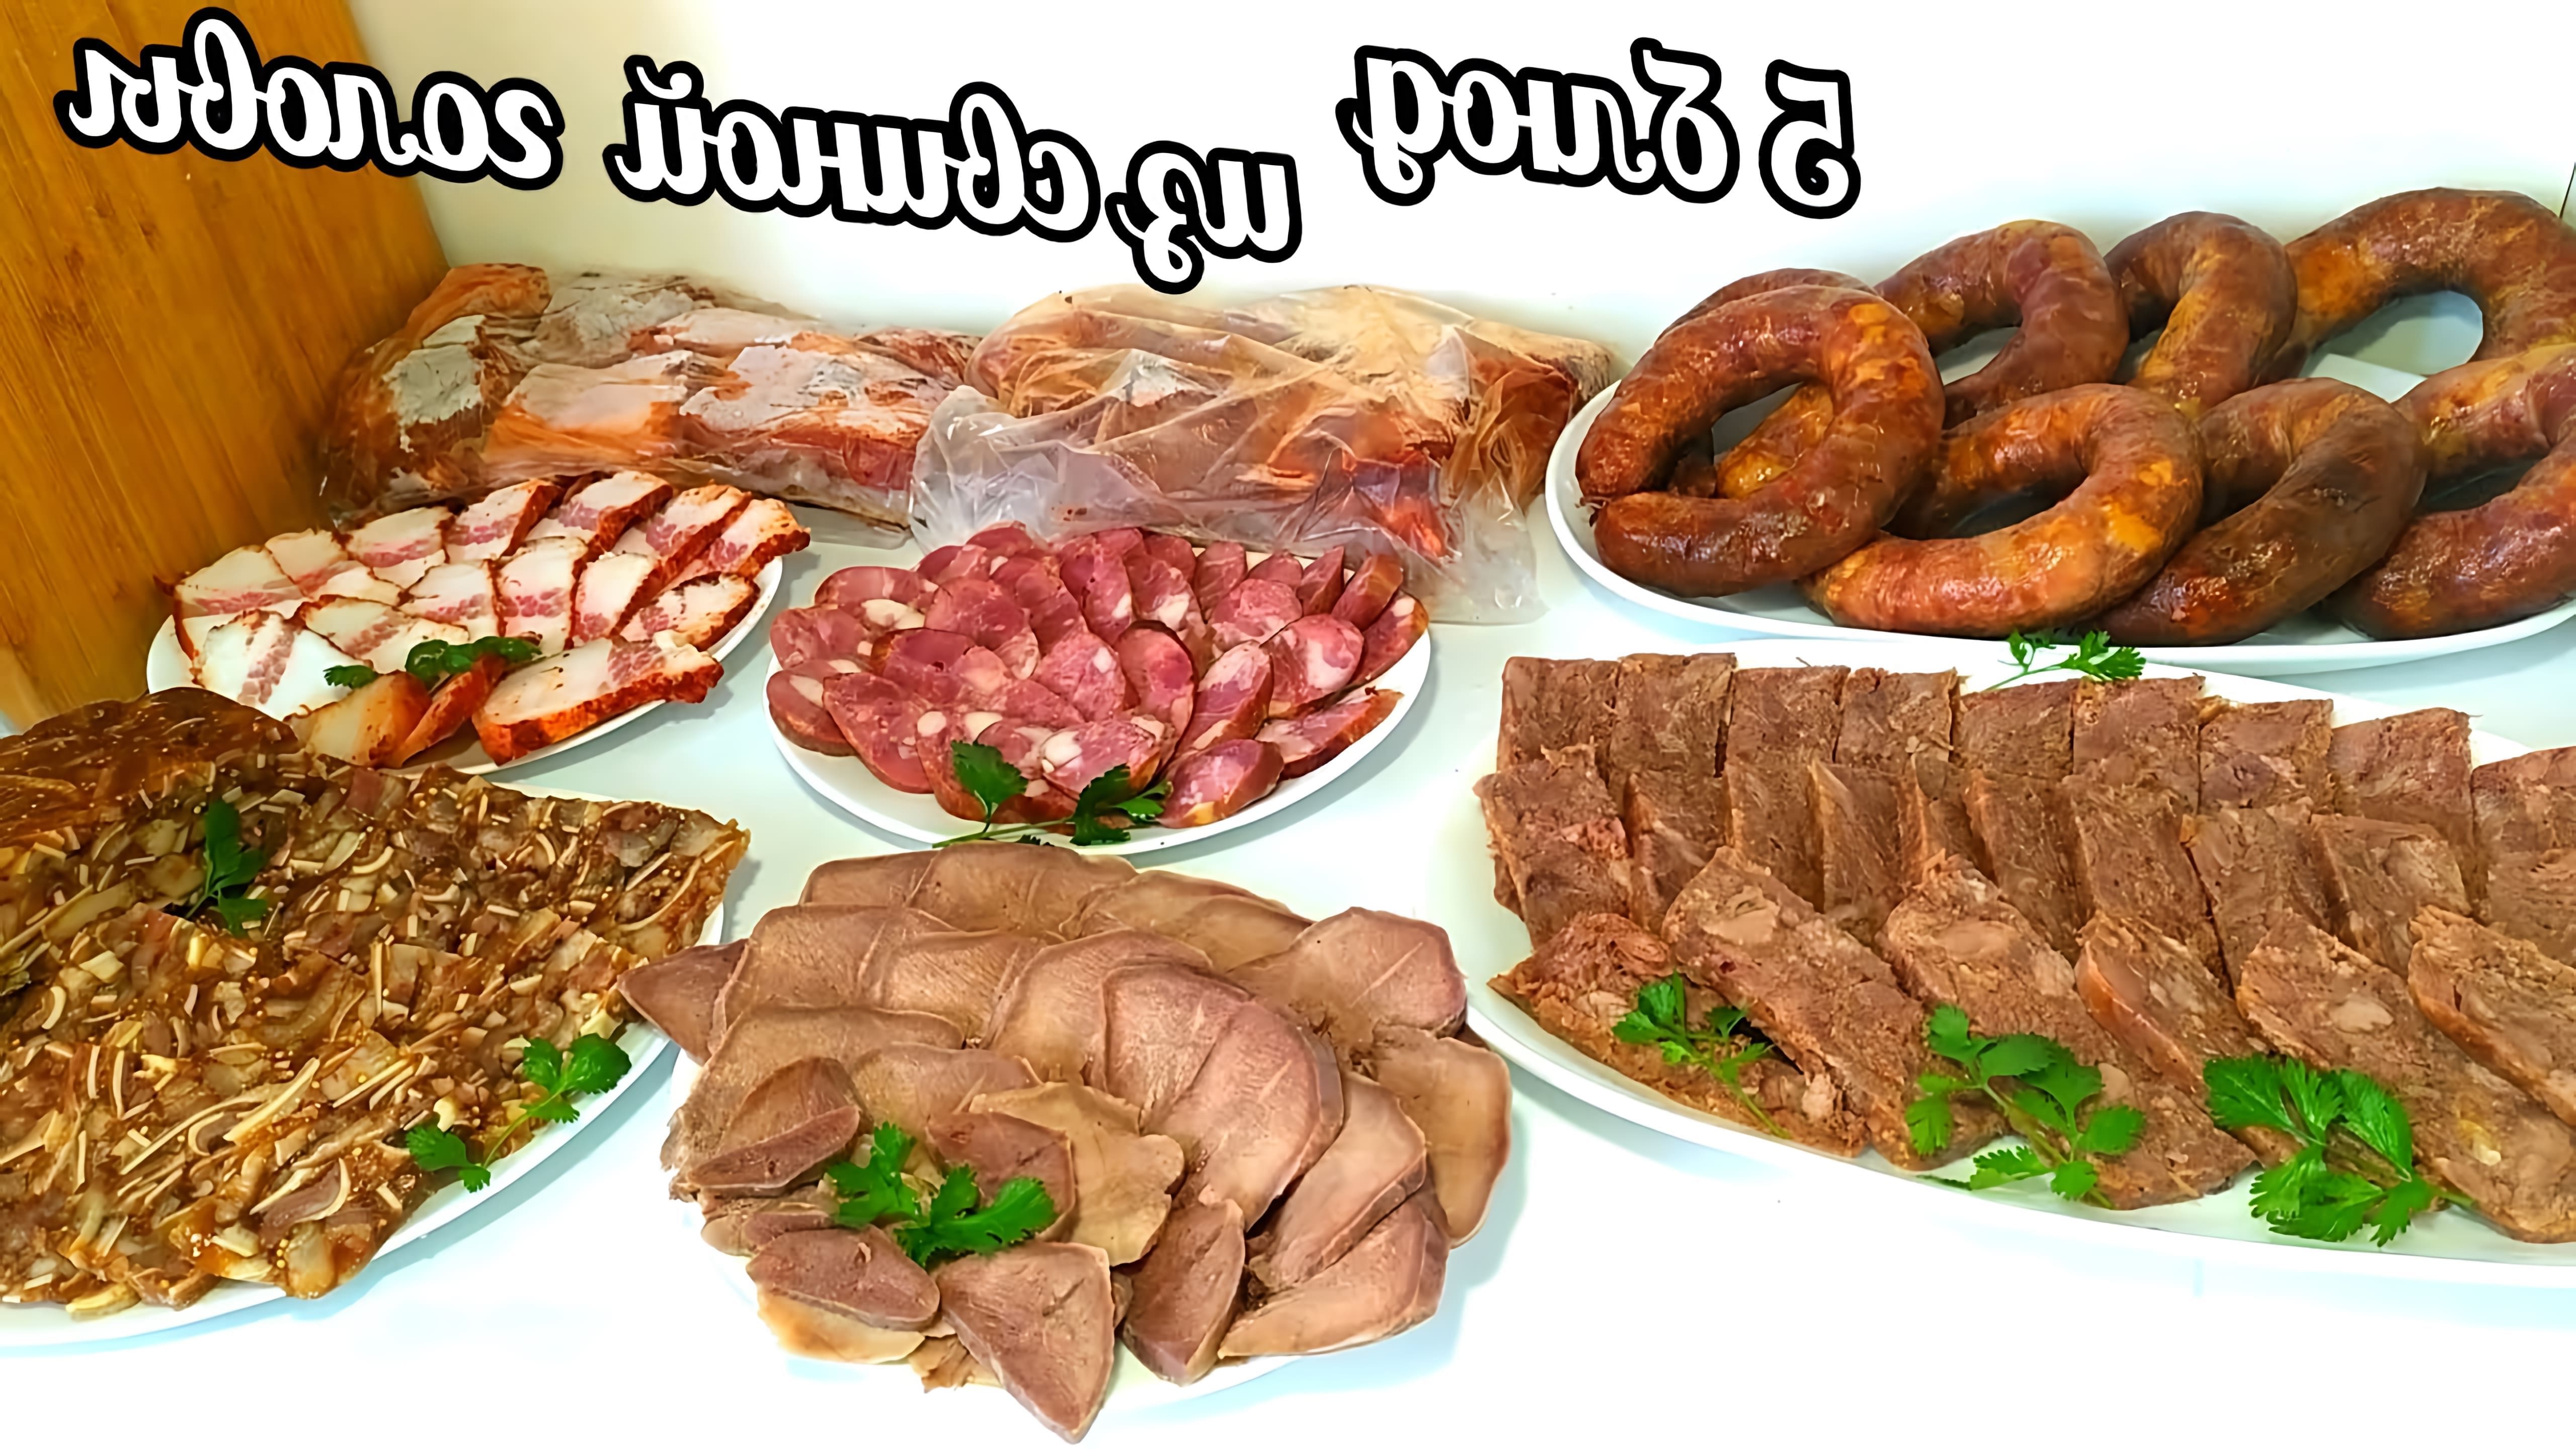 В этом видео демонстрируется процесс приготовления пяти блюд из одной свиной головы